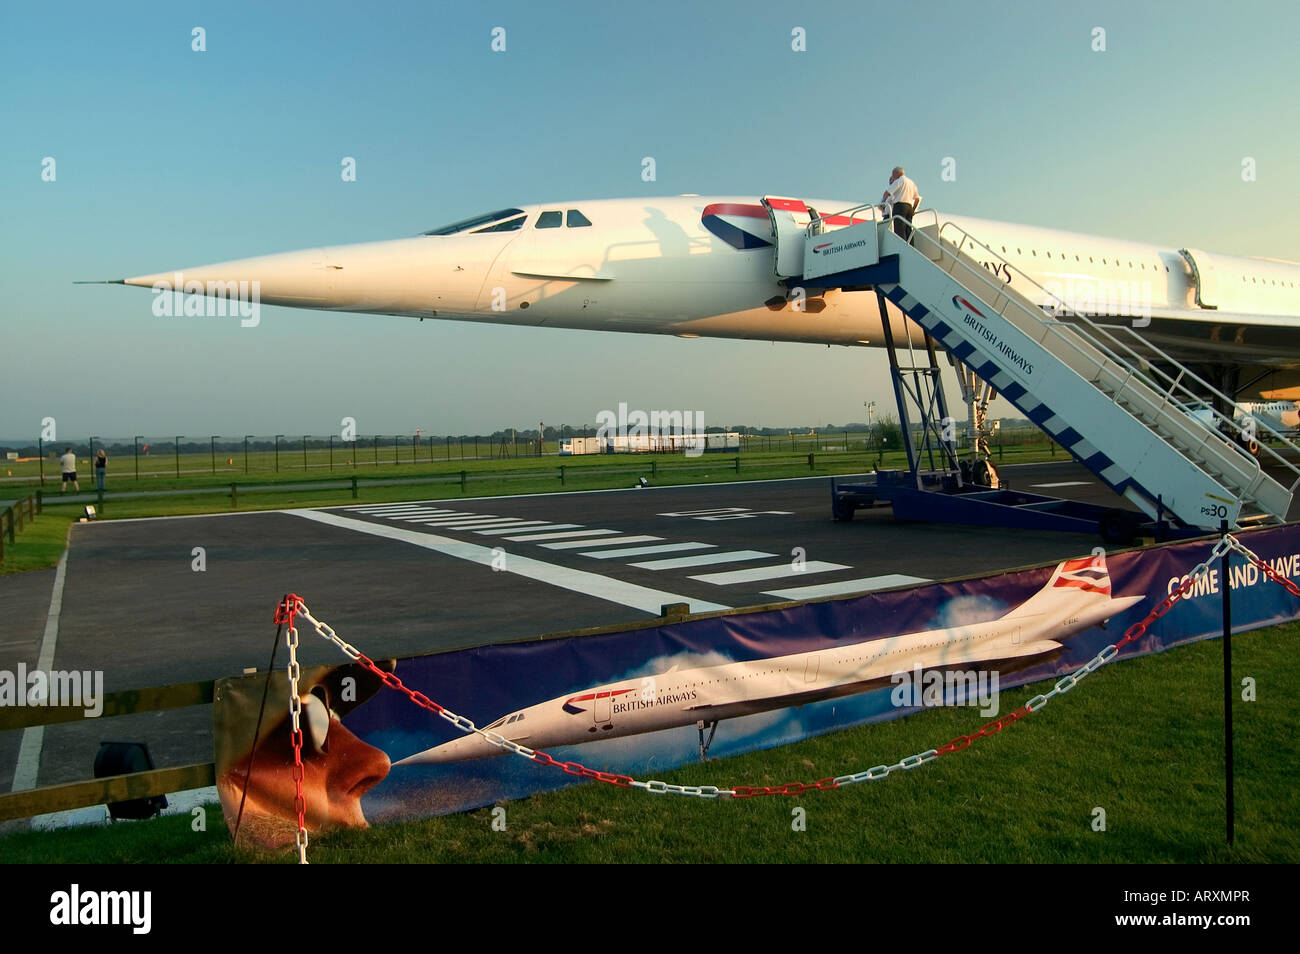 Concorde aeromobile supersonico airways anglofrench livrea compagnia aerea jet di linea veloce di lusso trasporto aereo ala delta obsoleto Foto Stock